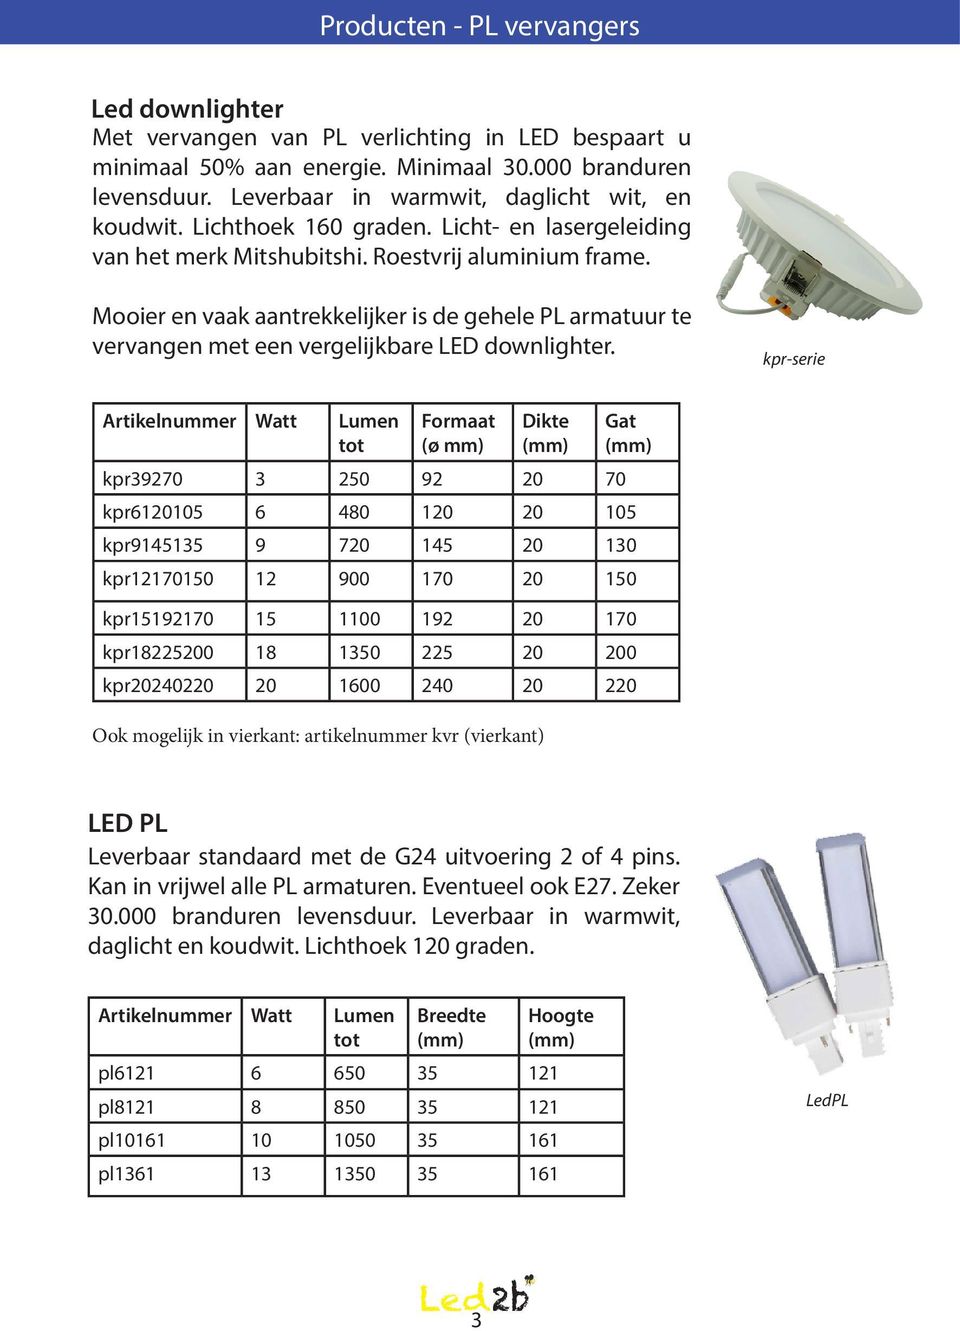 Mooier en vaak aantrekkelijker is de gehele PL armatuur te vervangen met een vergelijkbare LED downlighter.